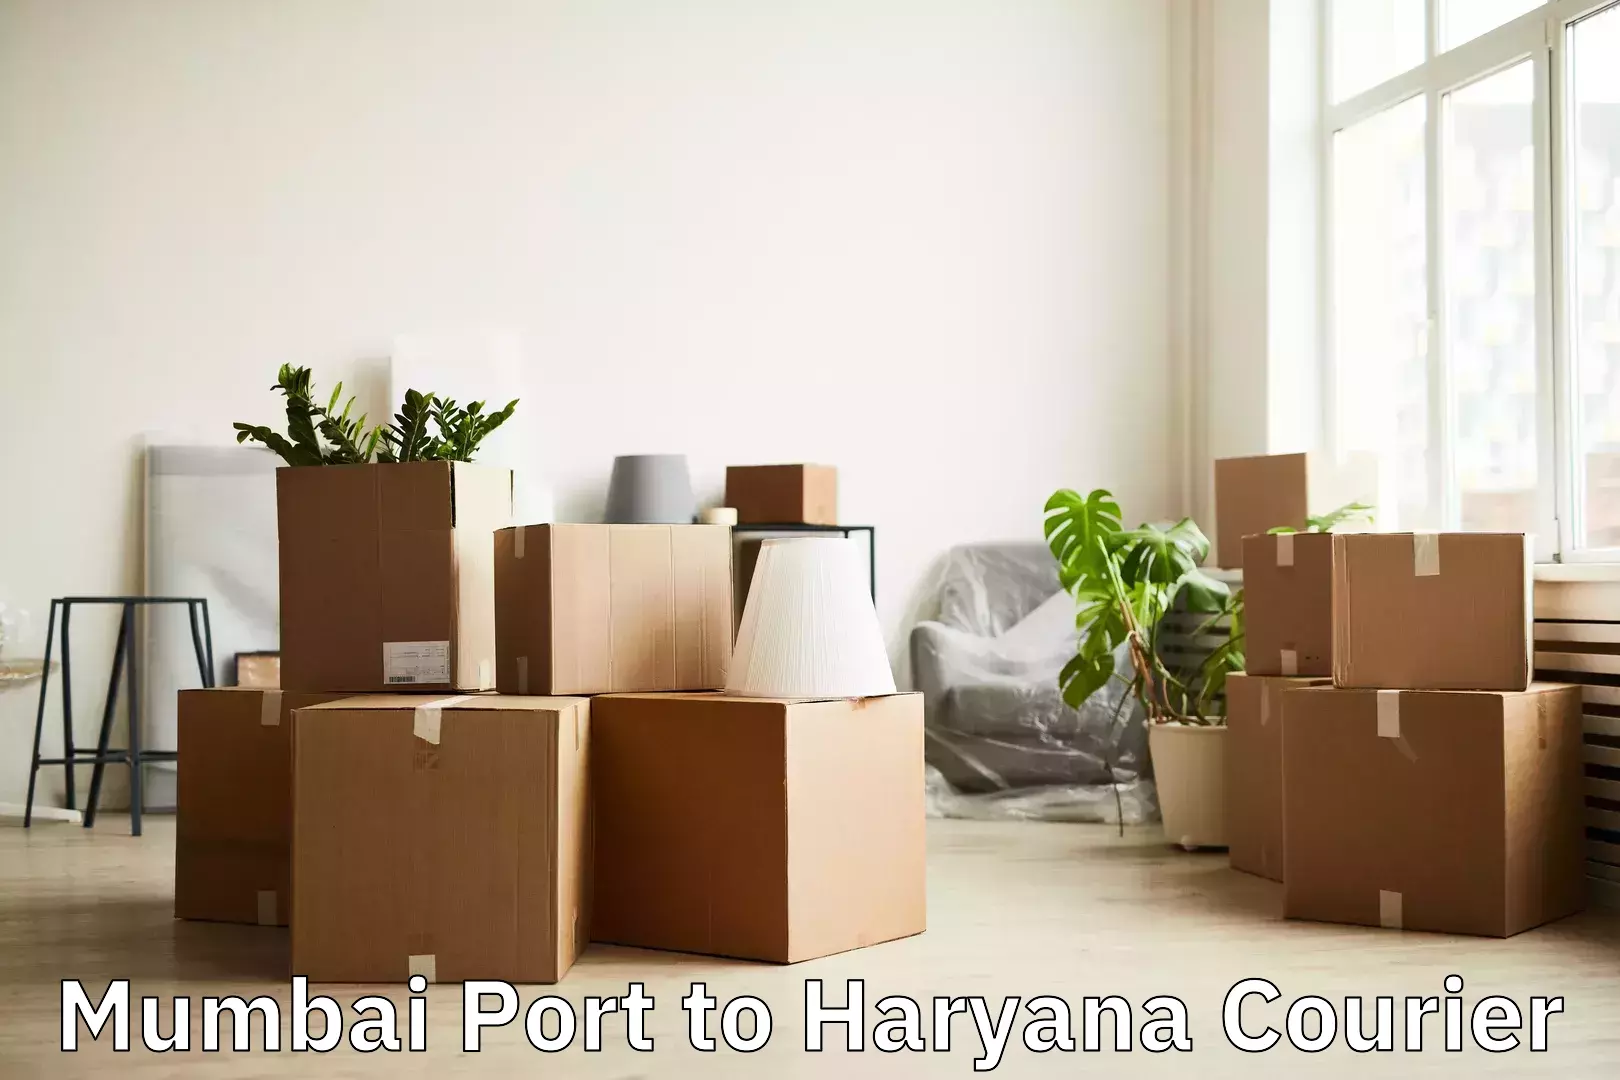 Luggage transport service Mumbai Port to NCR Haryana